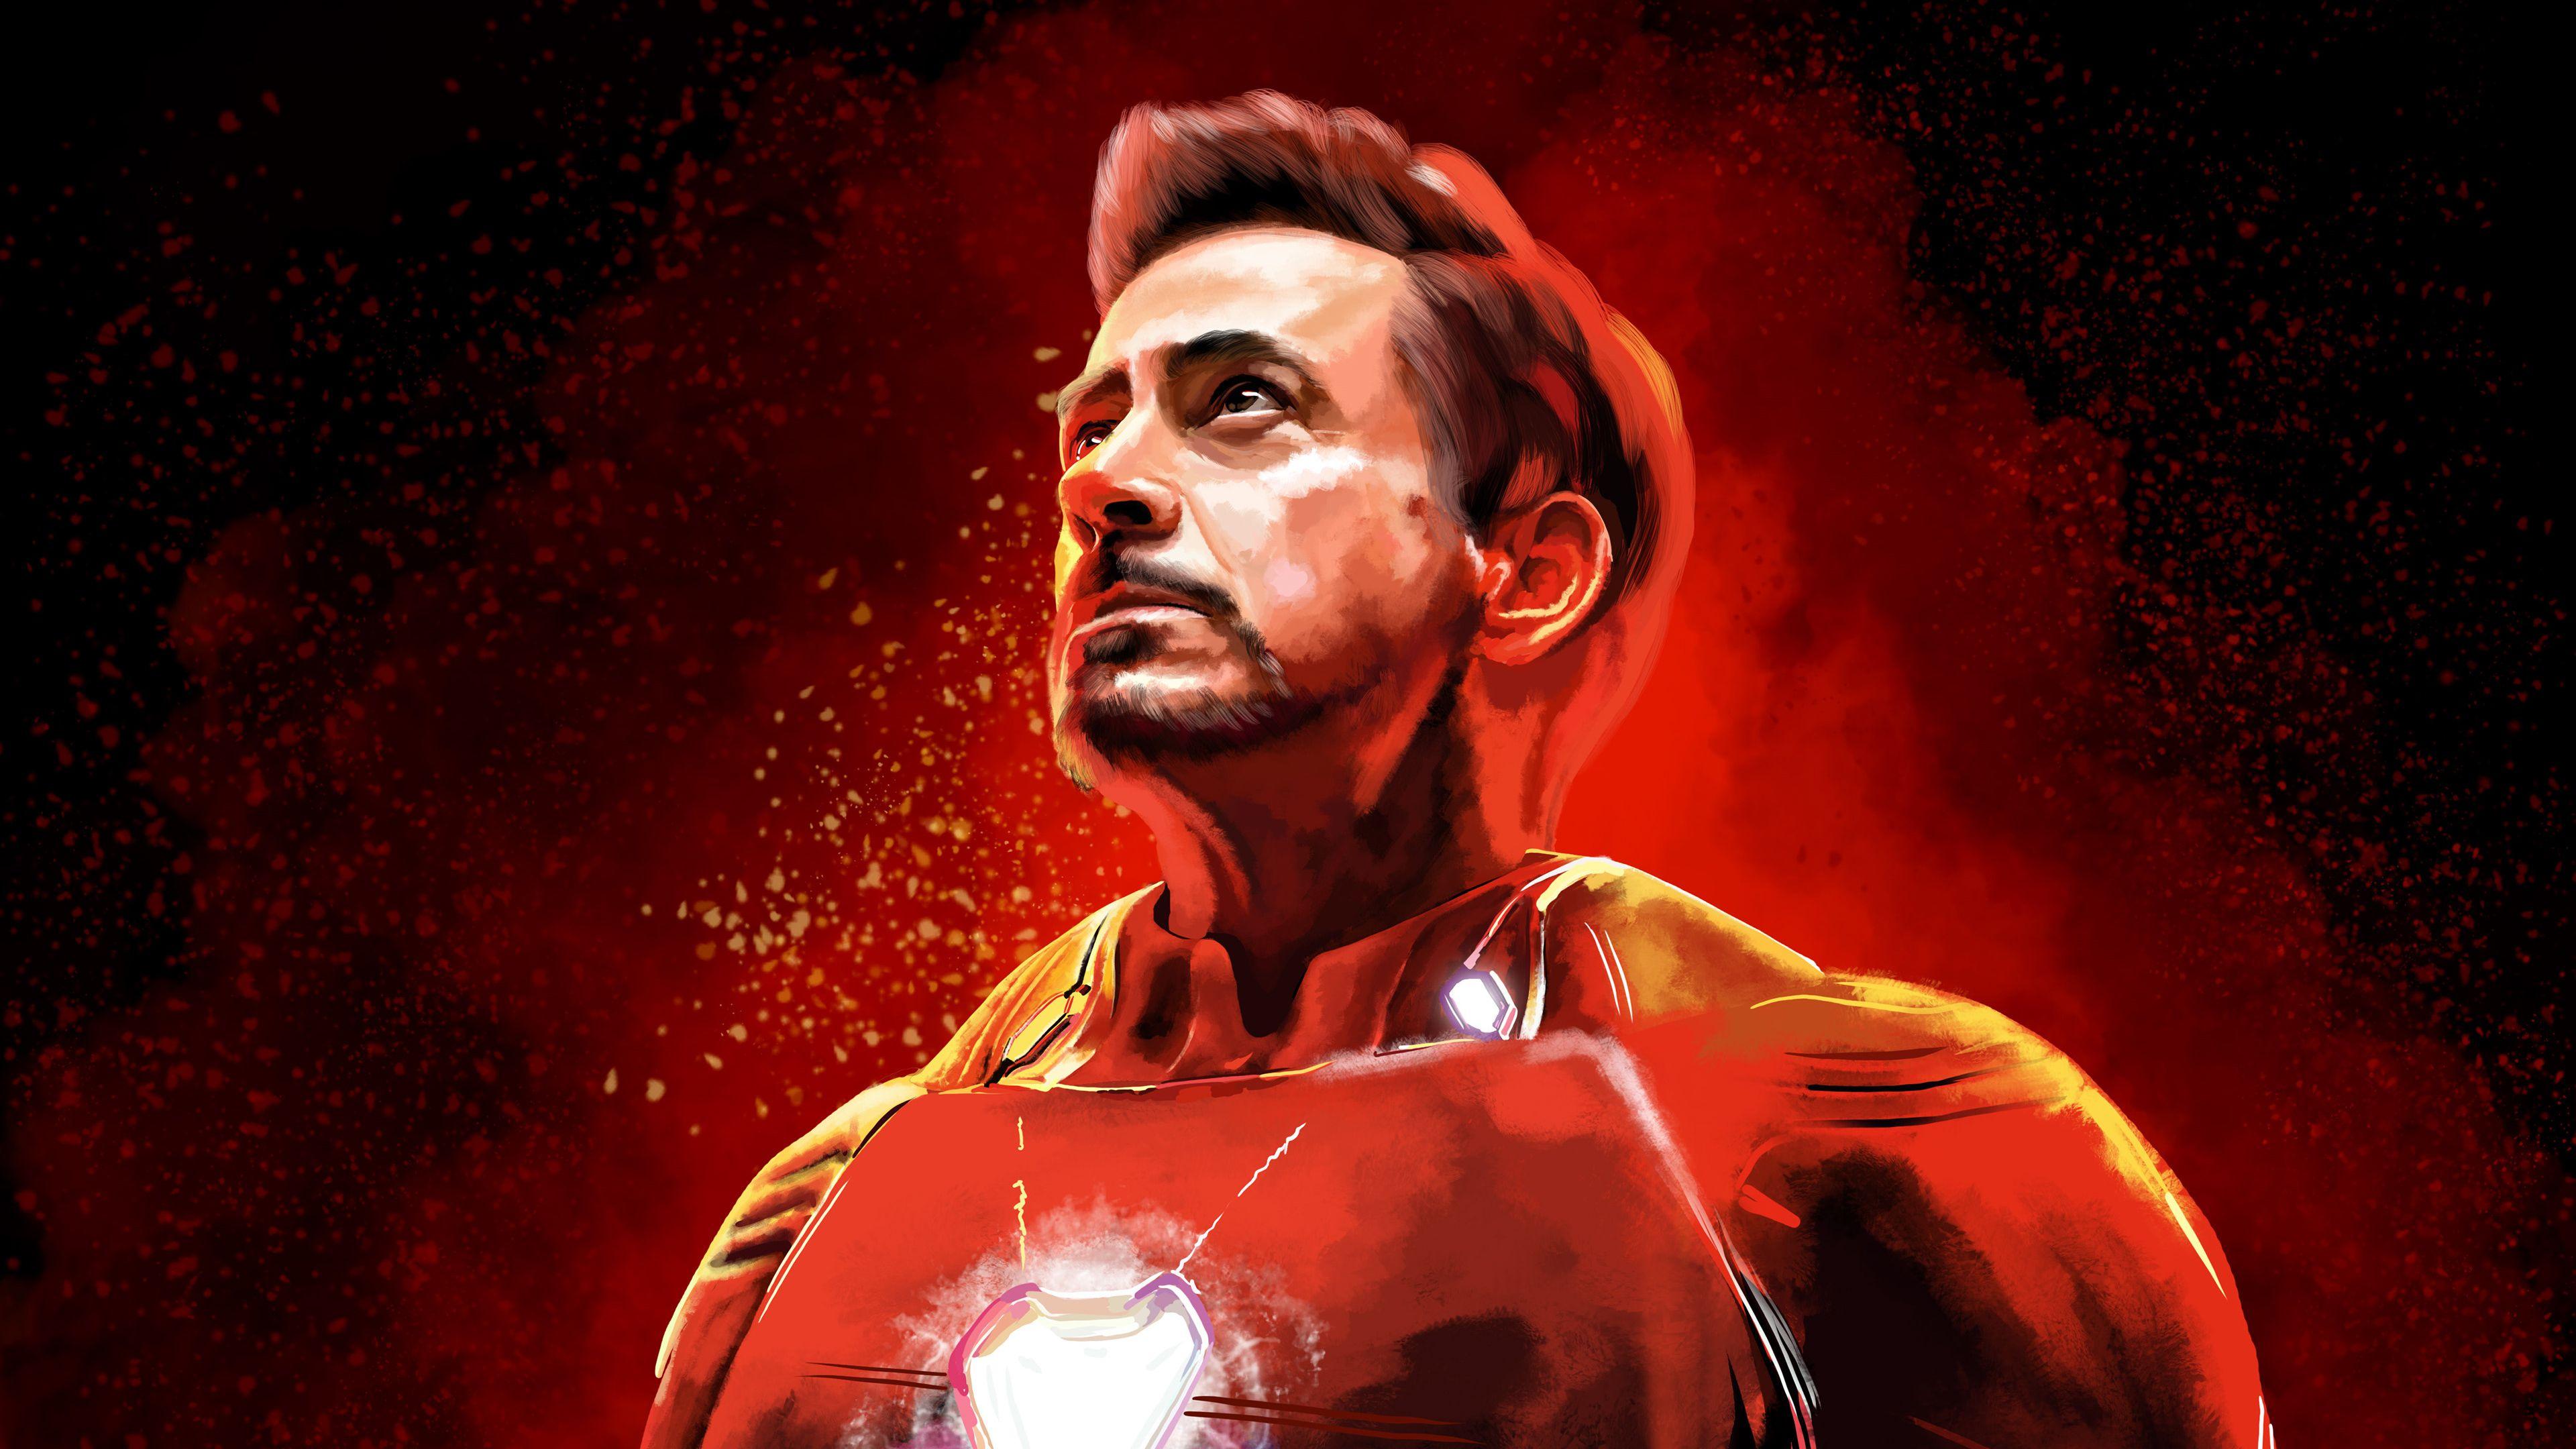 Tony Stark 4K Wallpapers - Top Free Tony Stark 4K Backgrounds